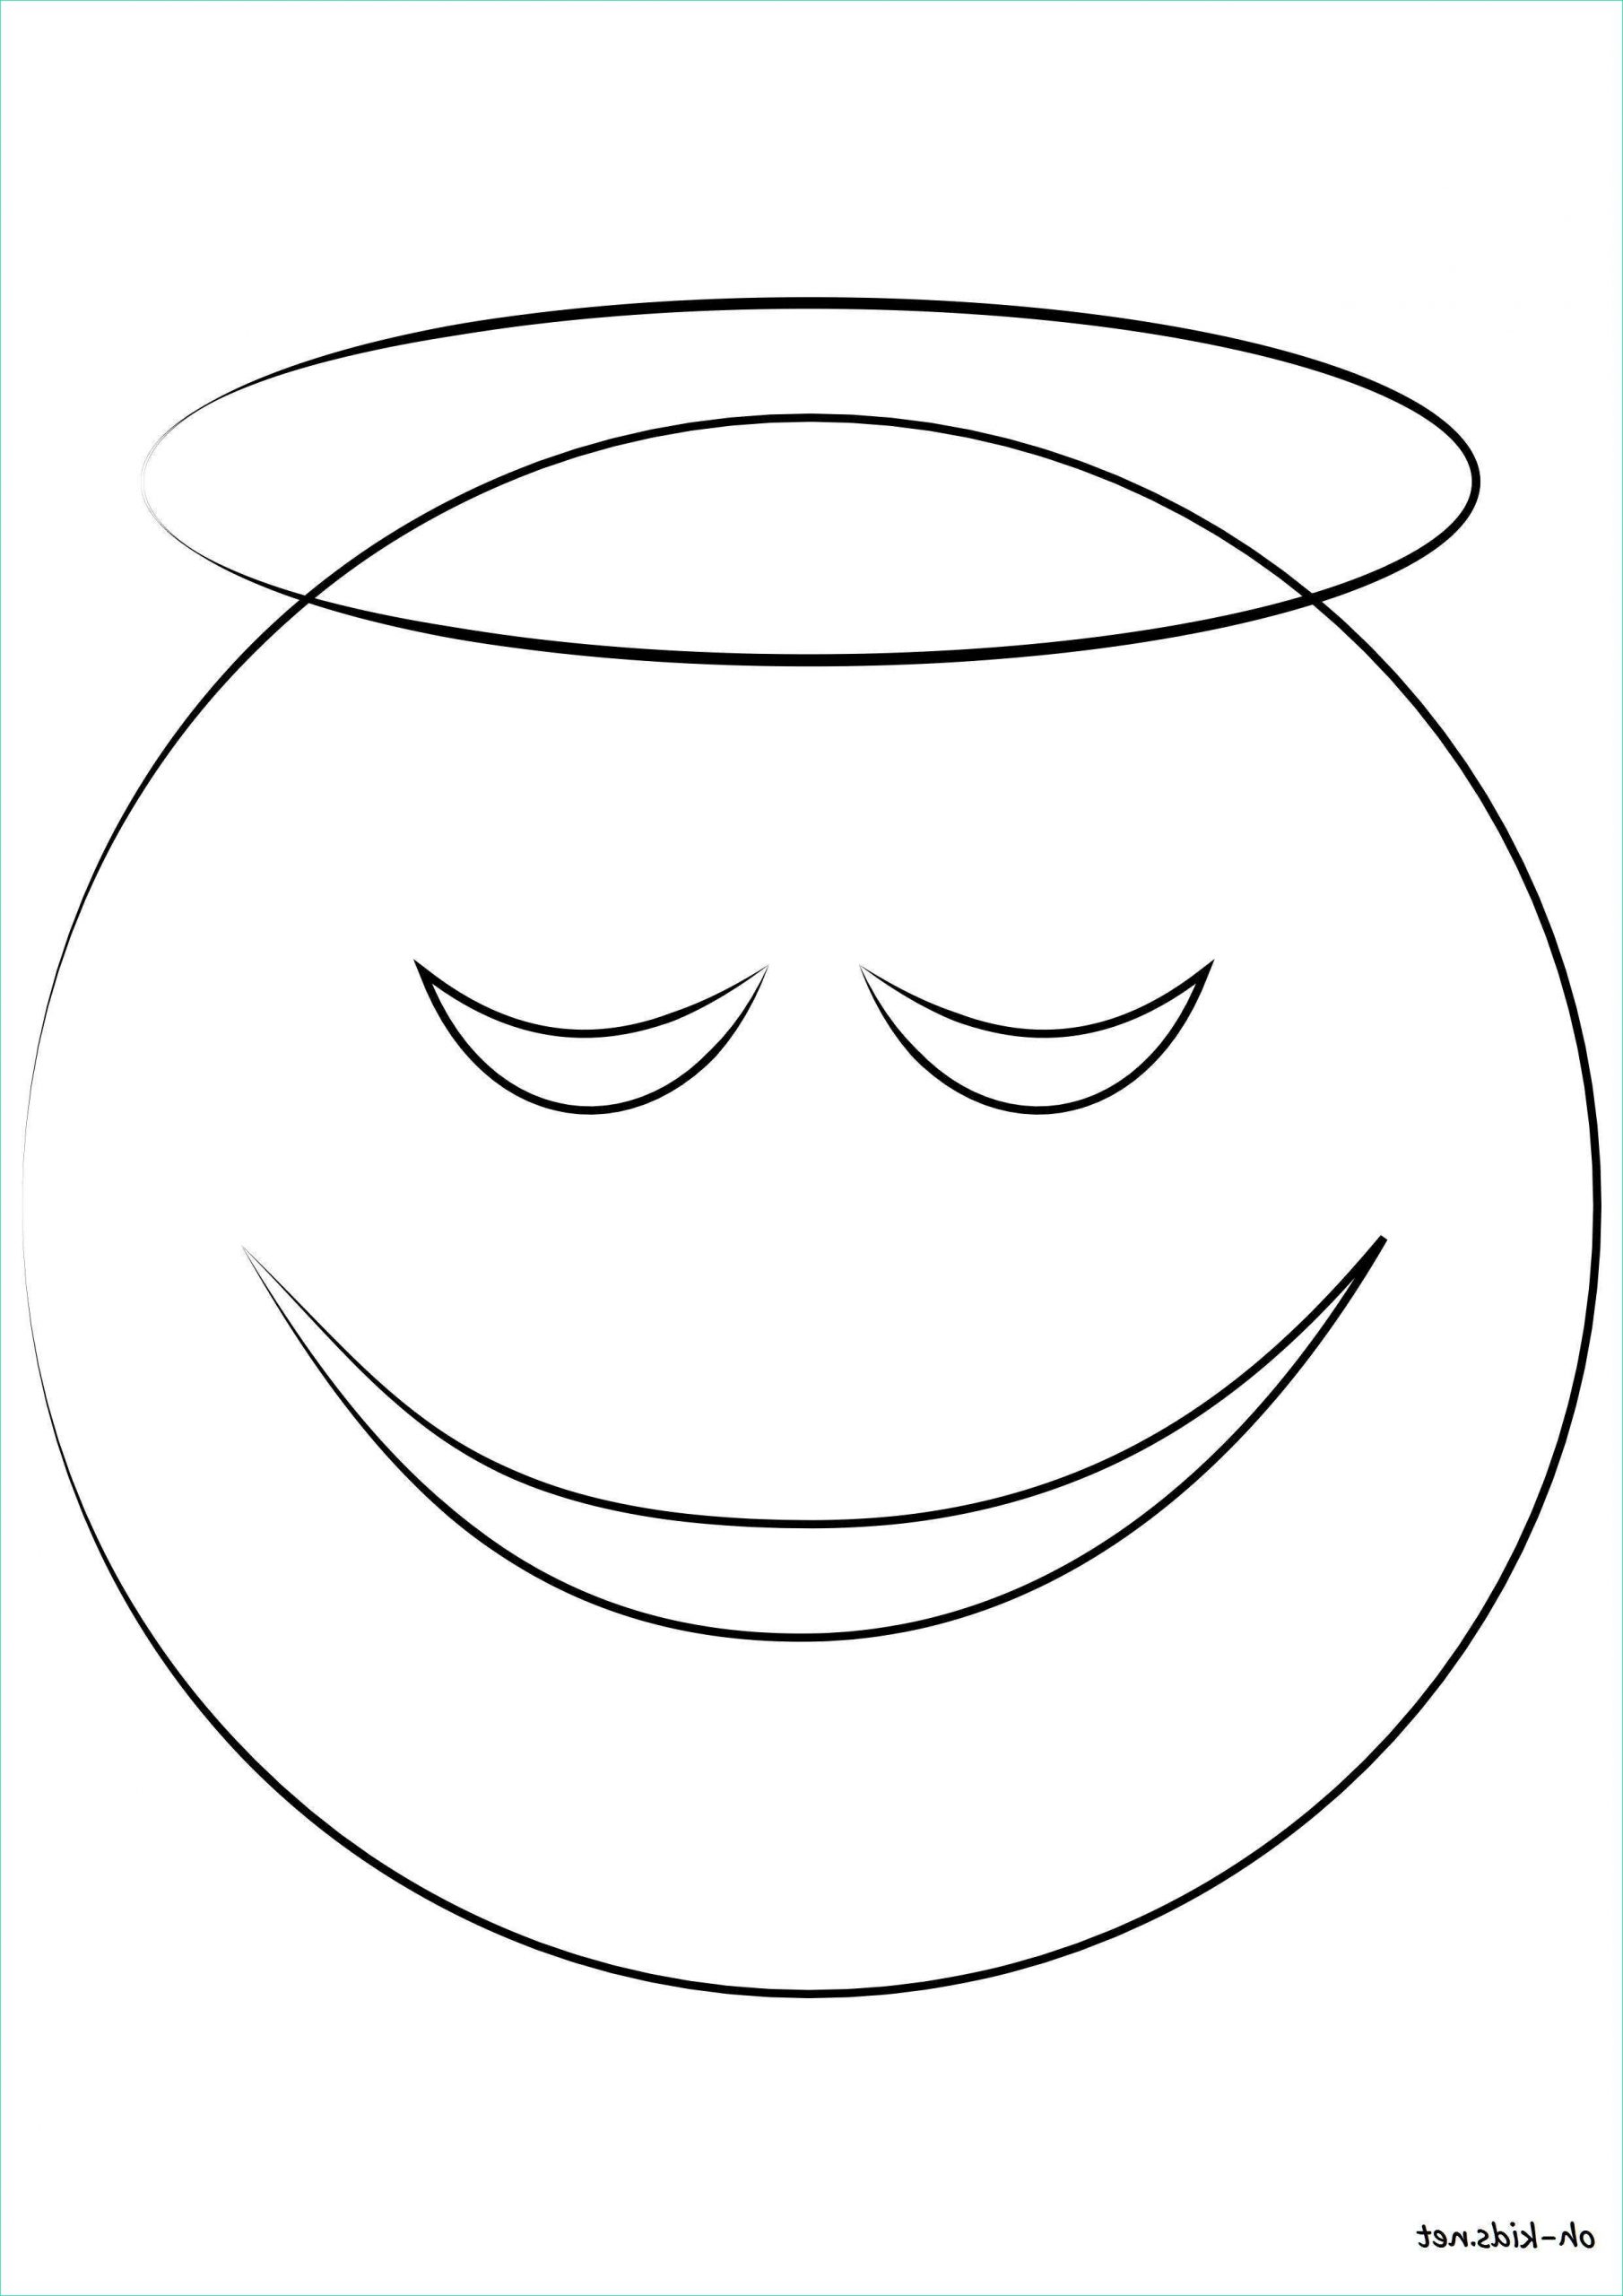 Dessin Smiley A Imprimer Beau Stock 15 Coloriage De Smiley A Imprimer Gratuit